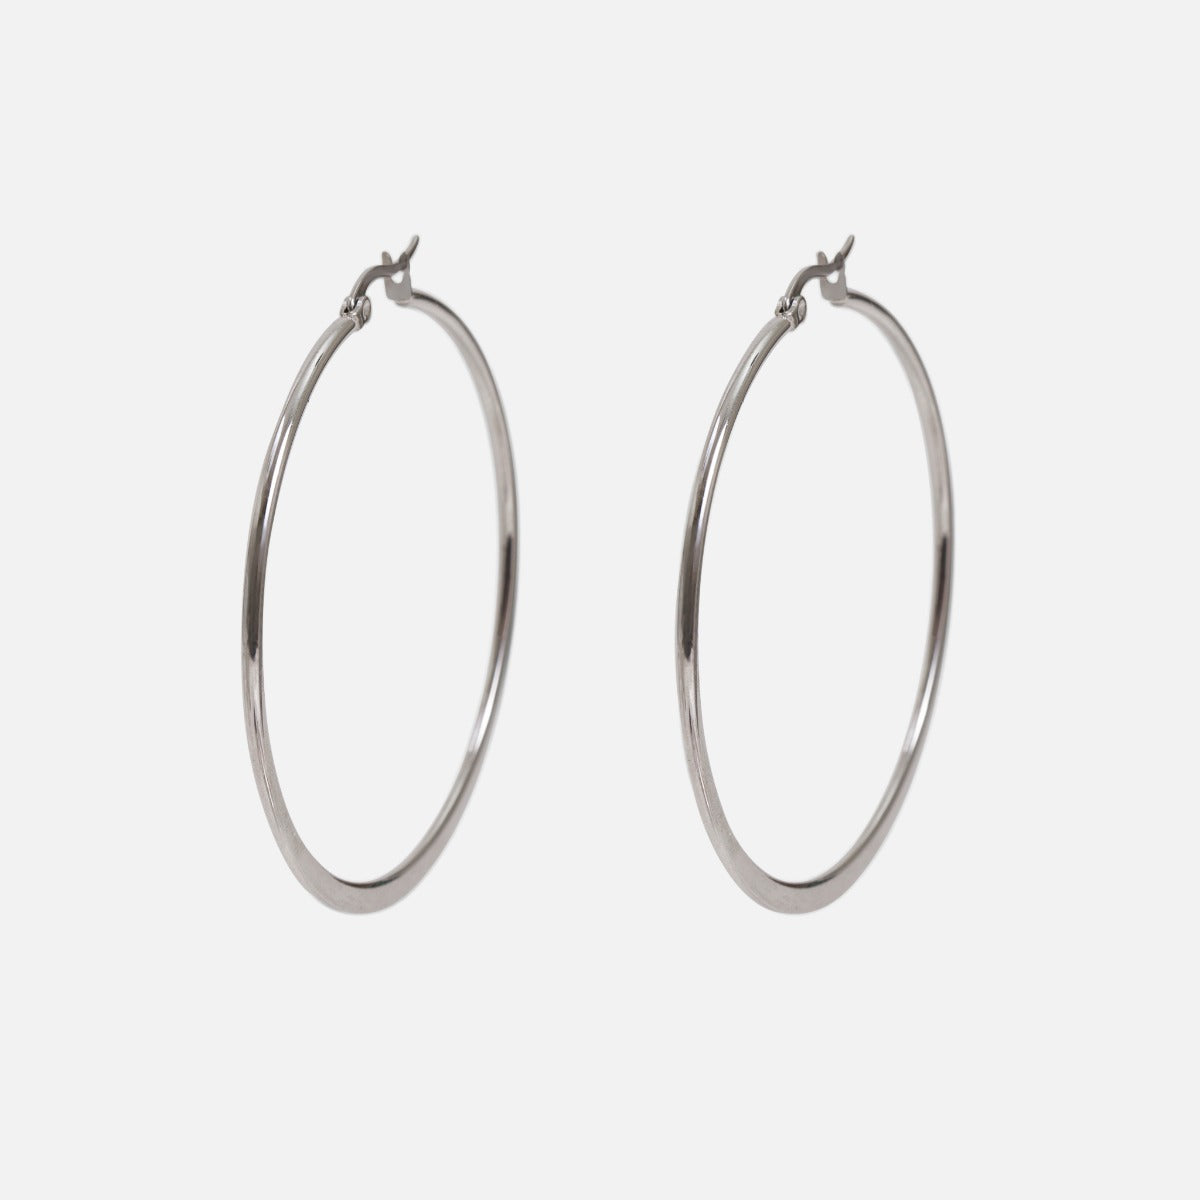 55 mm stainless steel hoop earrings